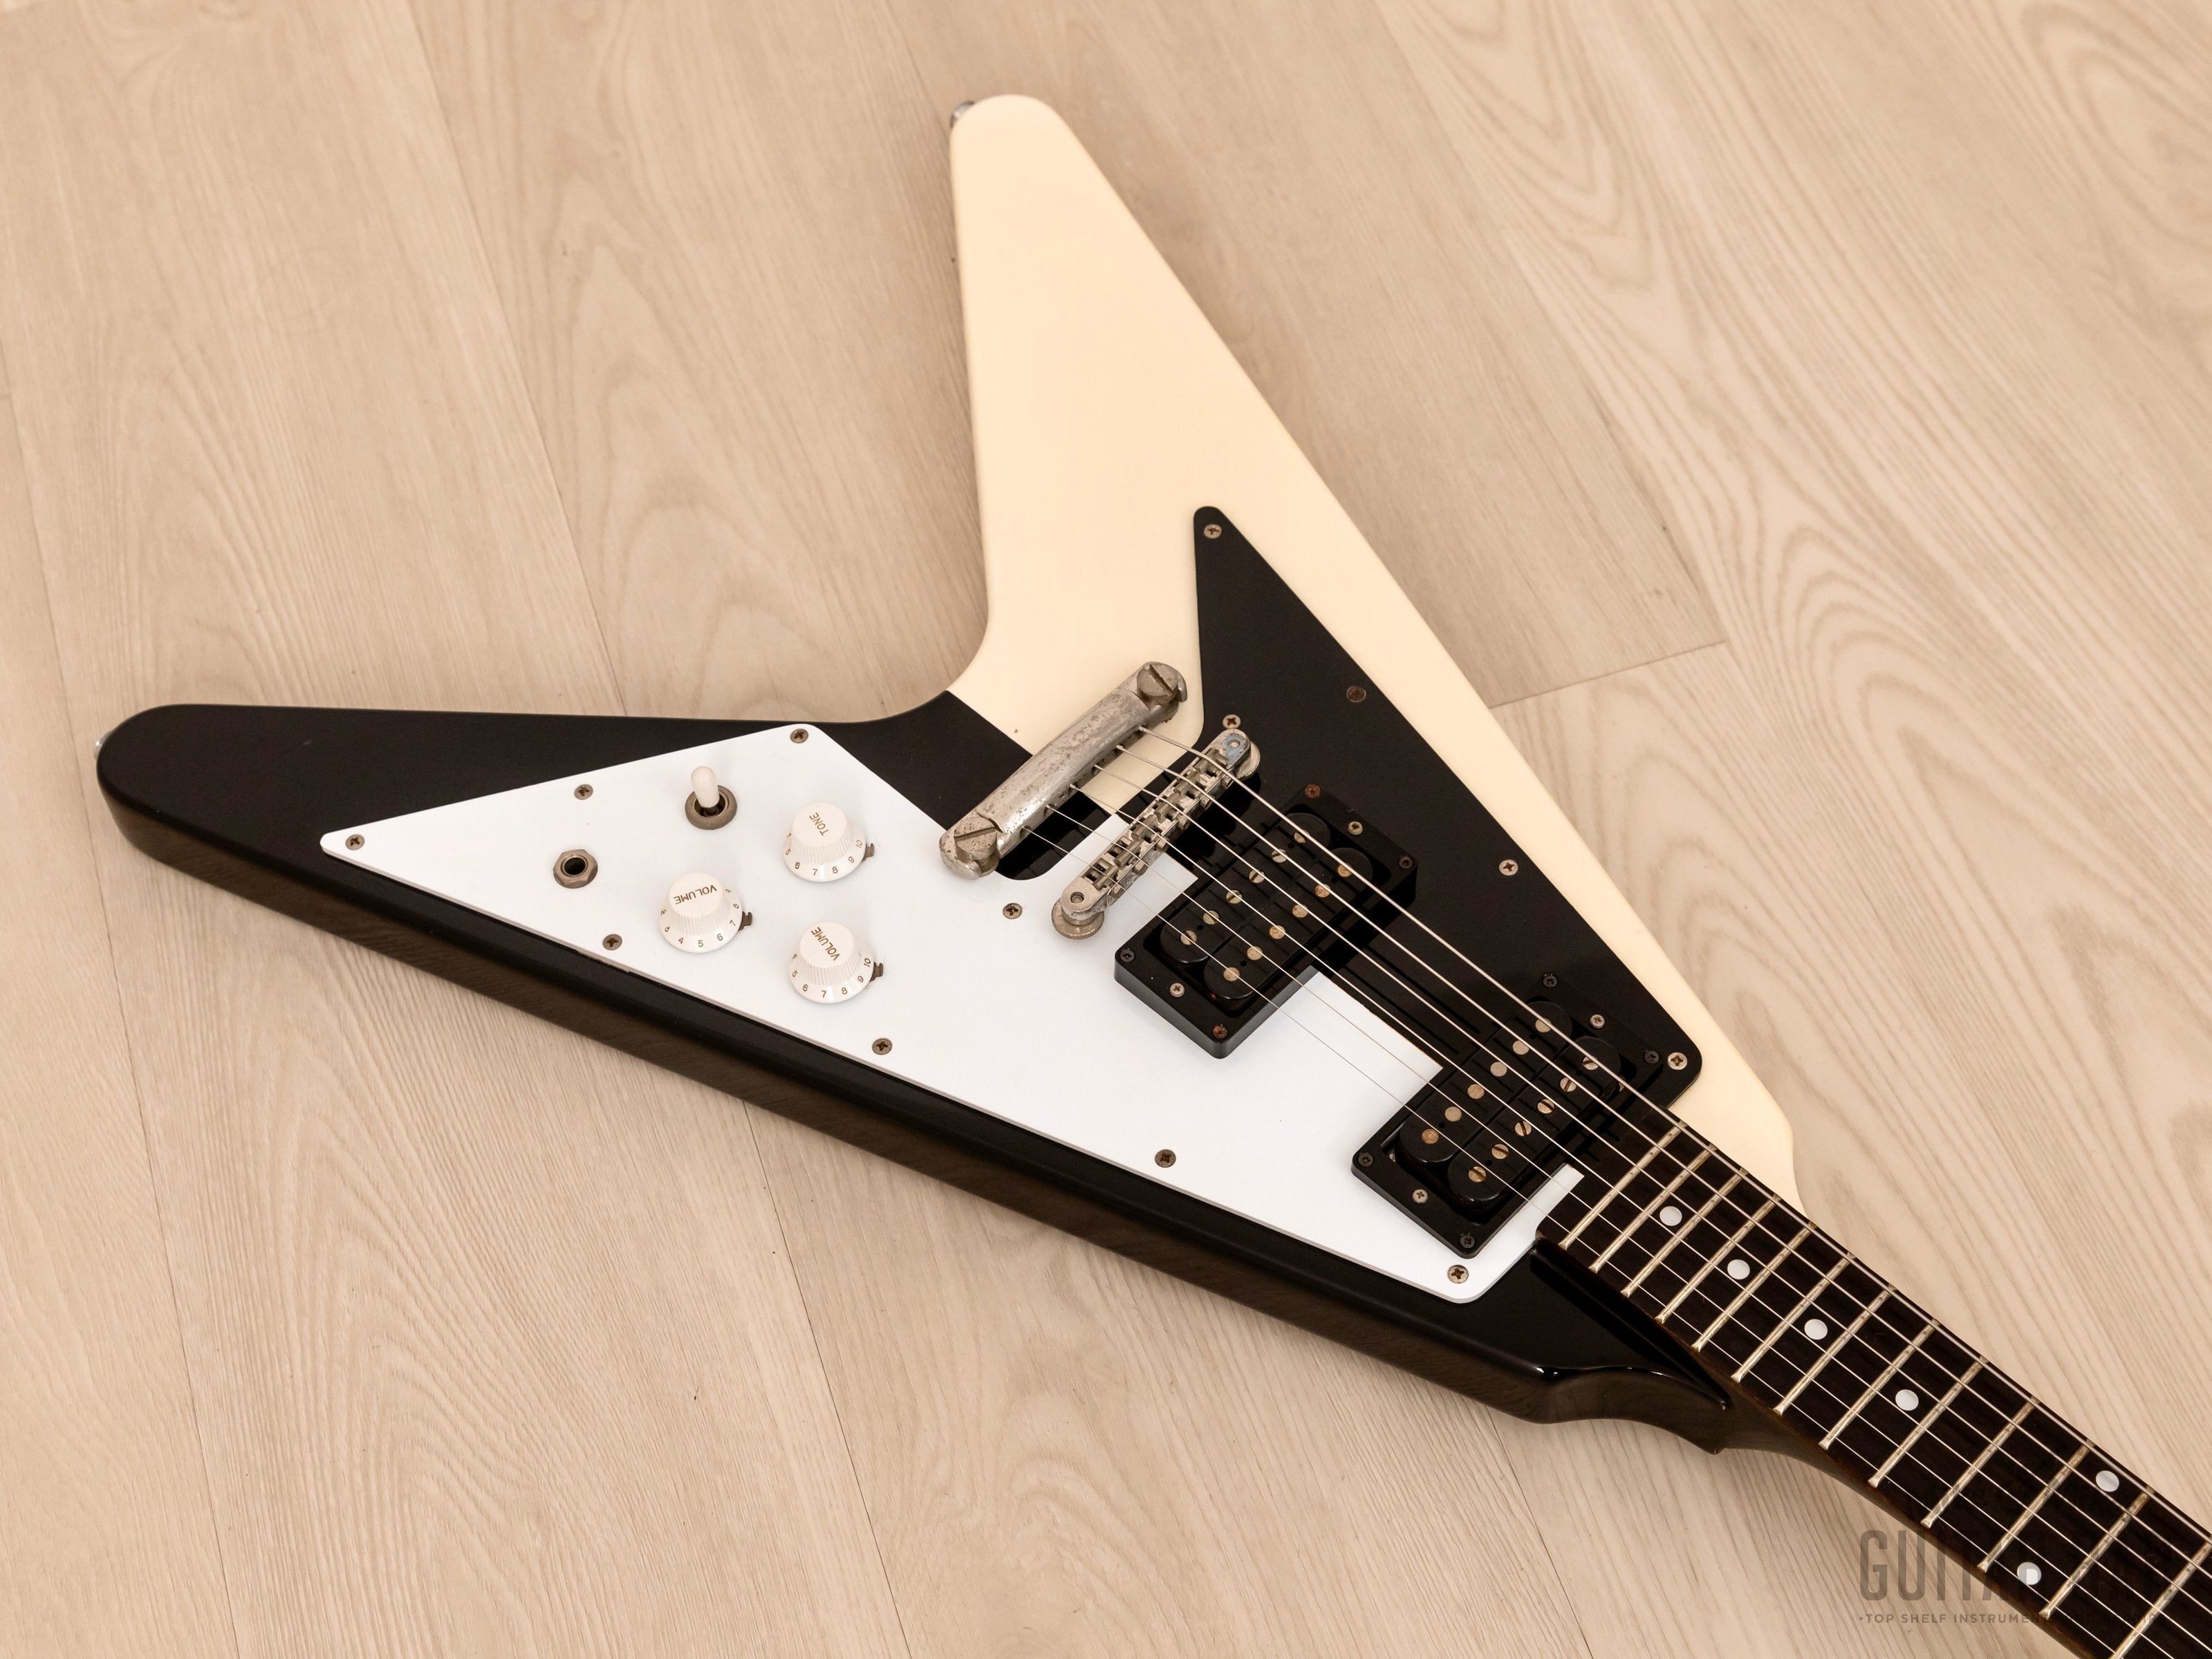 1982 Greco MSV-850 Michael Schenker Flying V Vintage Guitar w/ Case & Maxon PU-2, Japan Fujigen